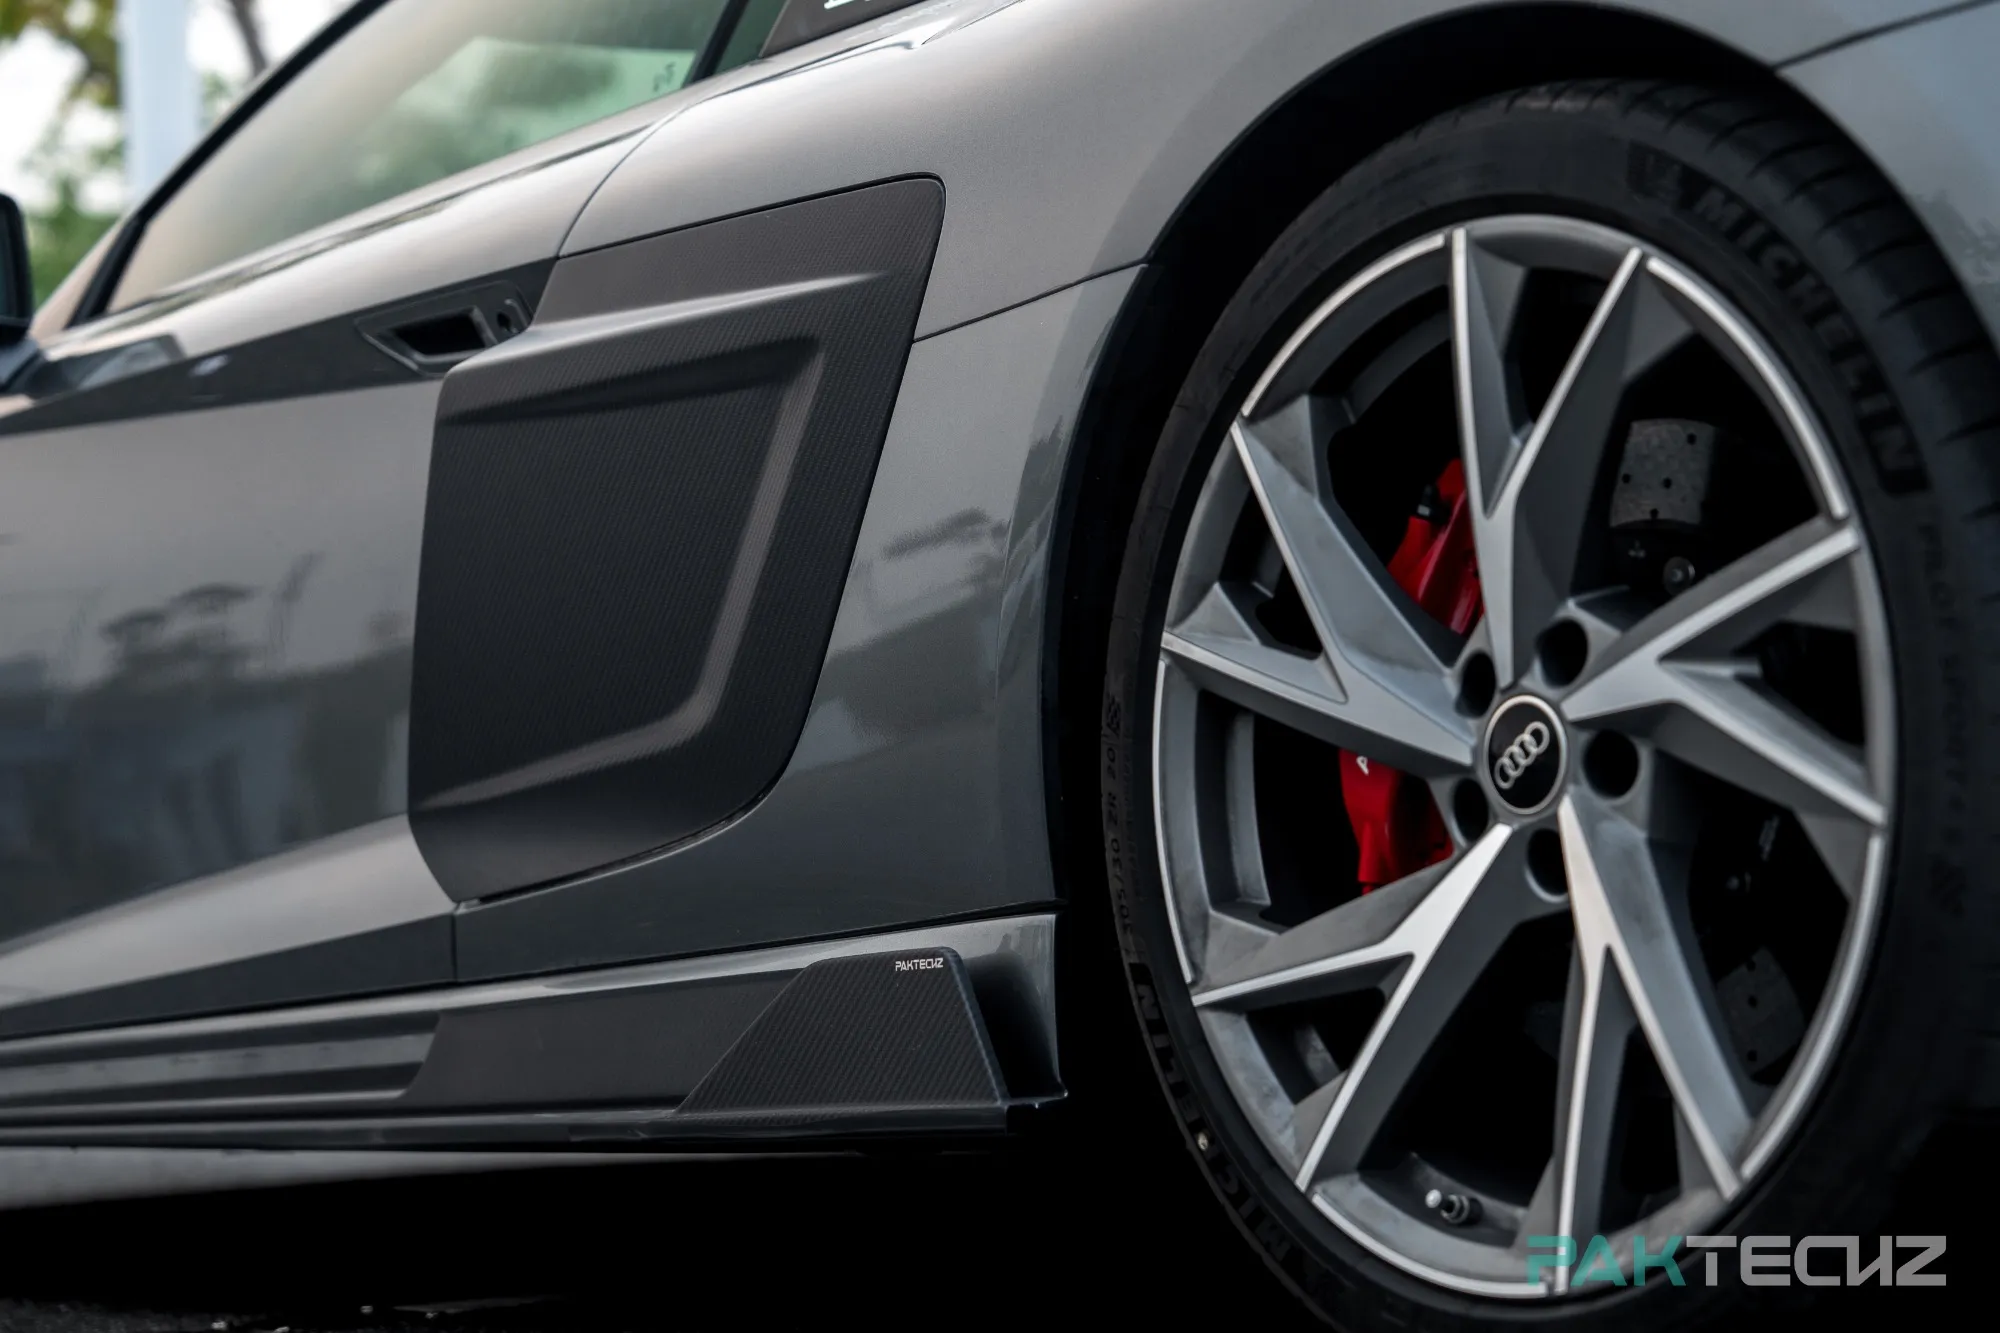 Paktechz Carbon Seitenschweller für Audi R8 4S.2